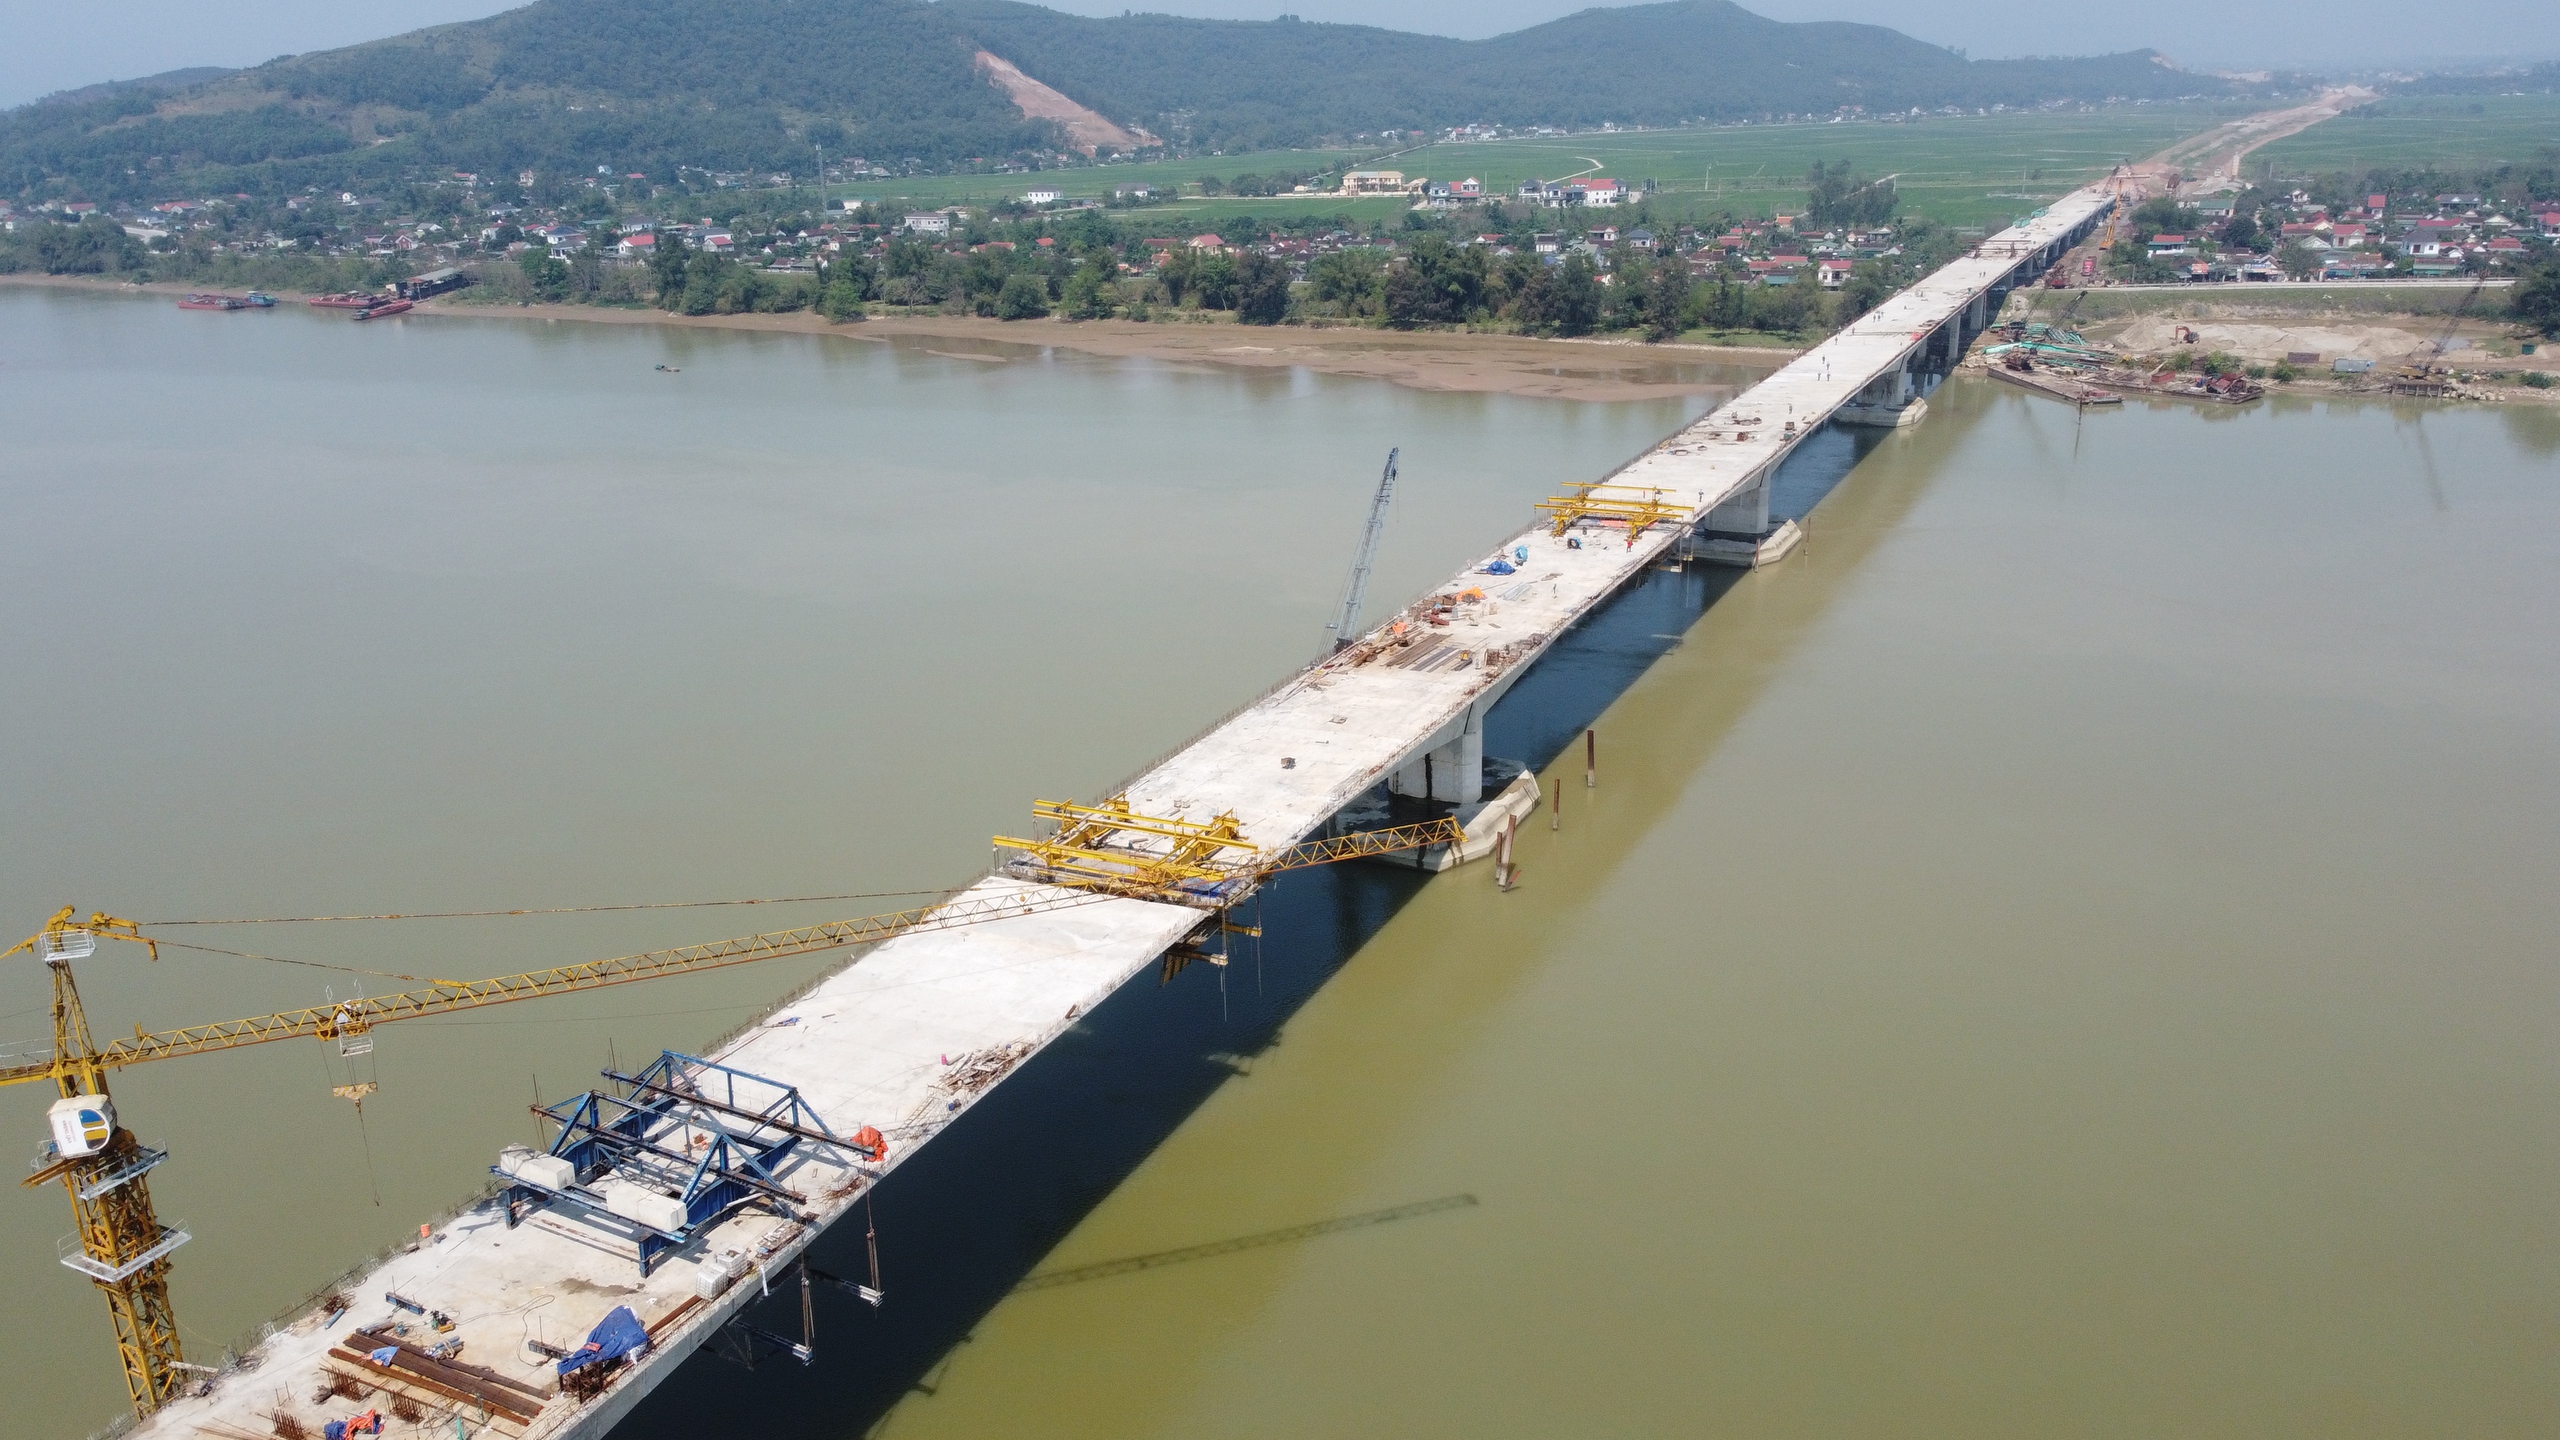 Cầu có chiều dài hơn 4 km, mặt cầu rộng 17 m với tổng giá trị dự toán hơn 1.200 tỉ đồng, do liên danh nhà thầu Công ty TNHH Đại Hiệp, Công ty CP đầu tư và xây dựng Thái Yên, Công ty TNHH Hòa Hiệp và Công ty CP Tập đoàn Cienco 4 thi công